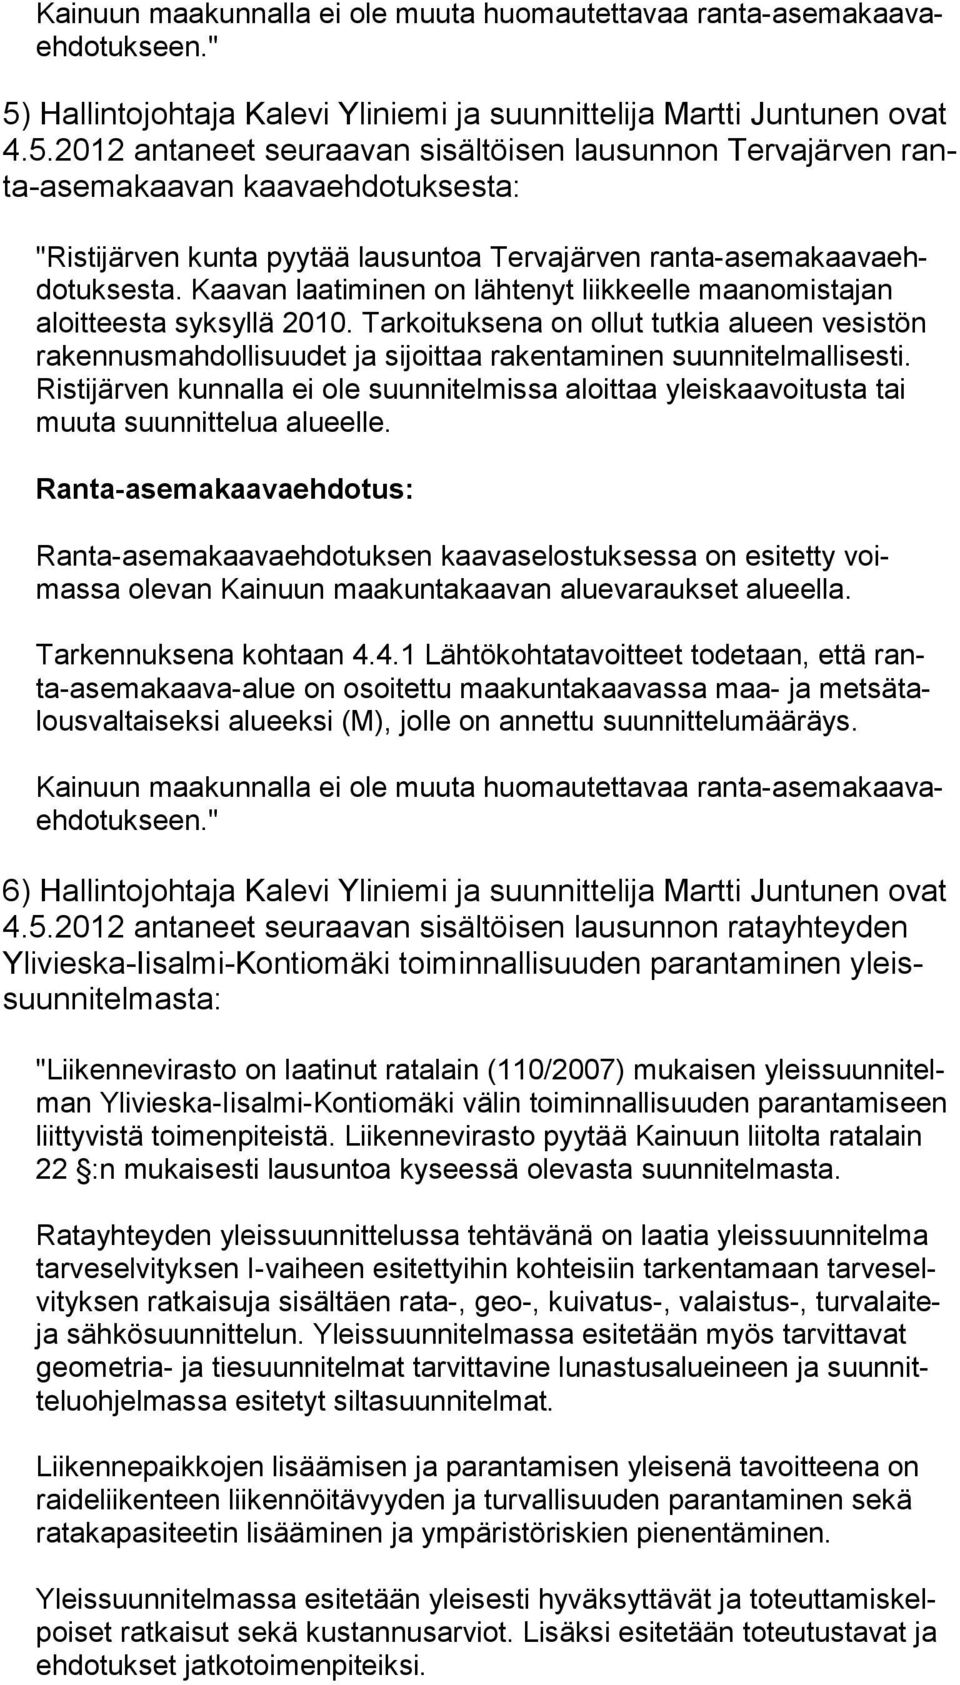 2012 an taneet seuraavan sisältöisen lausunnon Tervajärven ranta-ase ma kaavan kaavaehdotuksesta: "Ristijärven kunta pyytää lausuntoa Tervajärven ranta-asemakaava ehdo tuksesta.